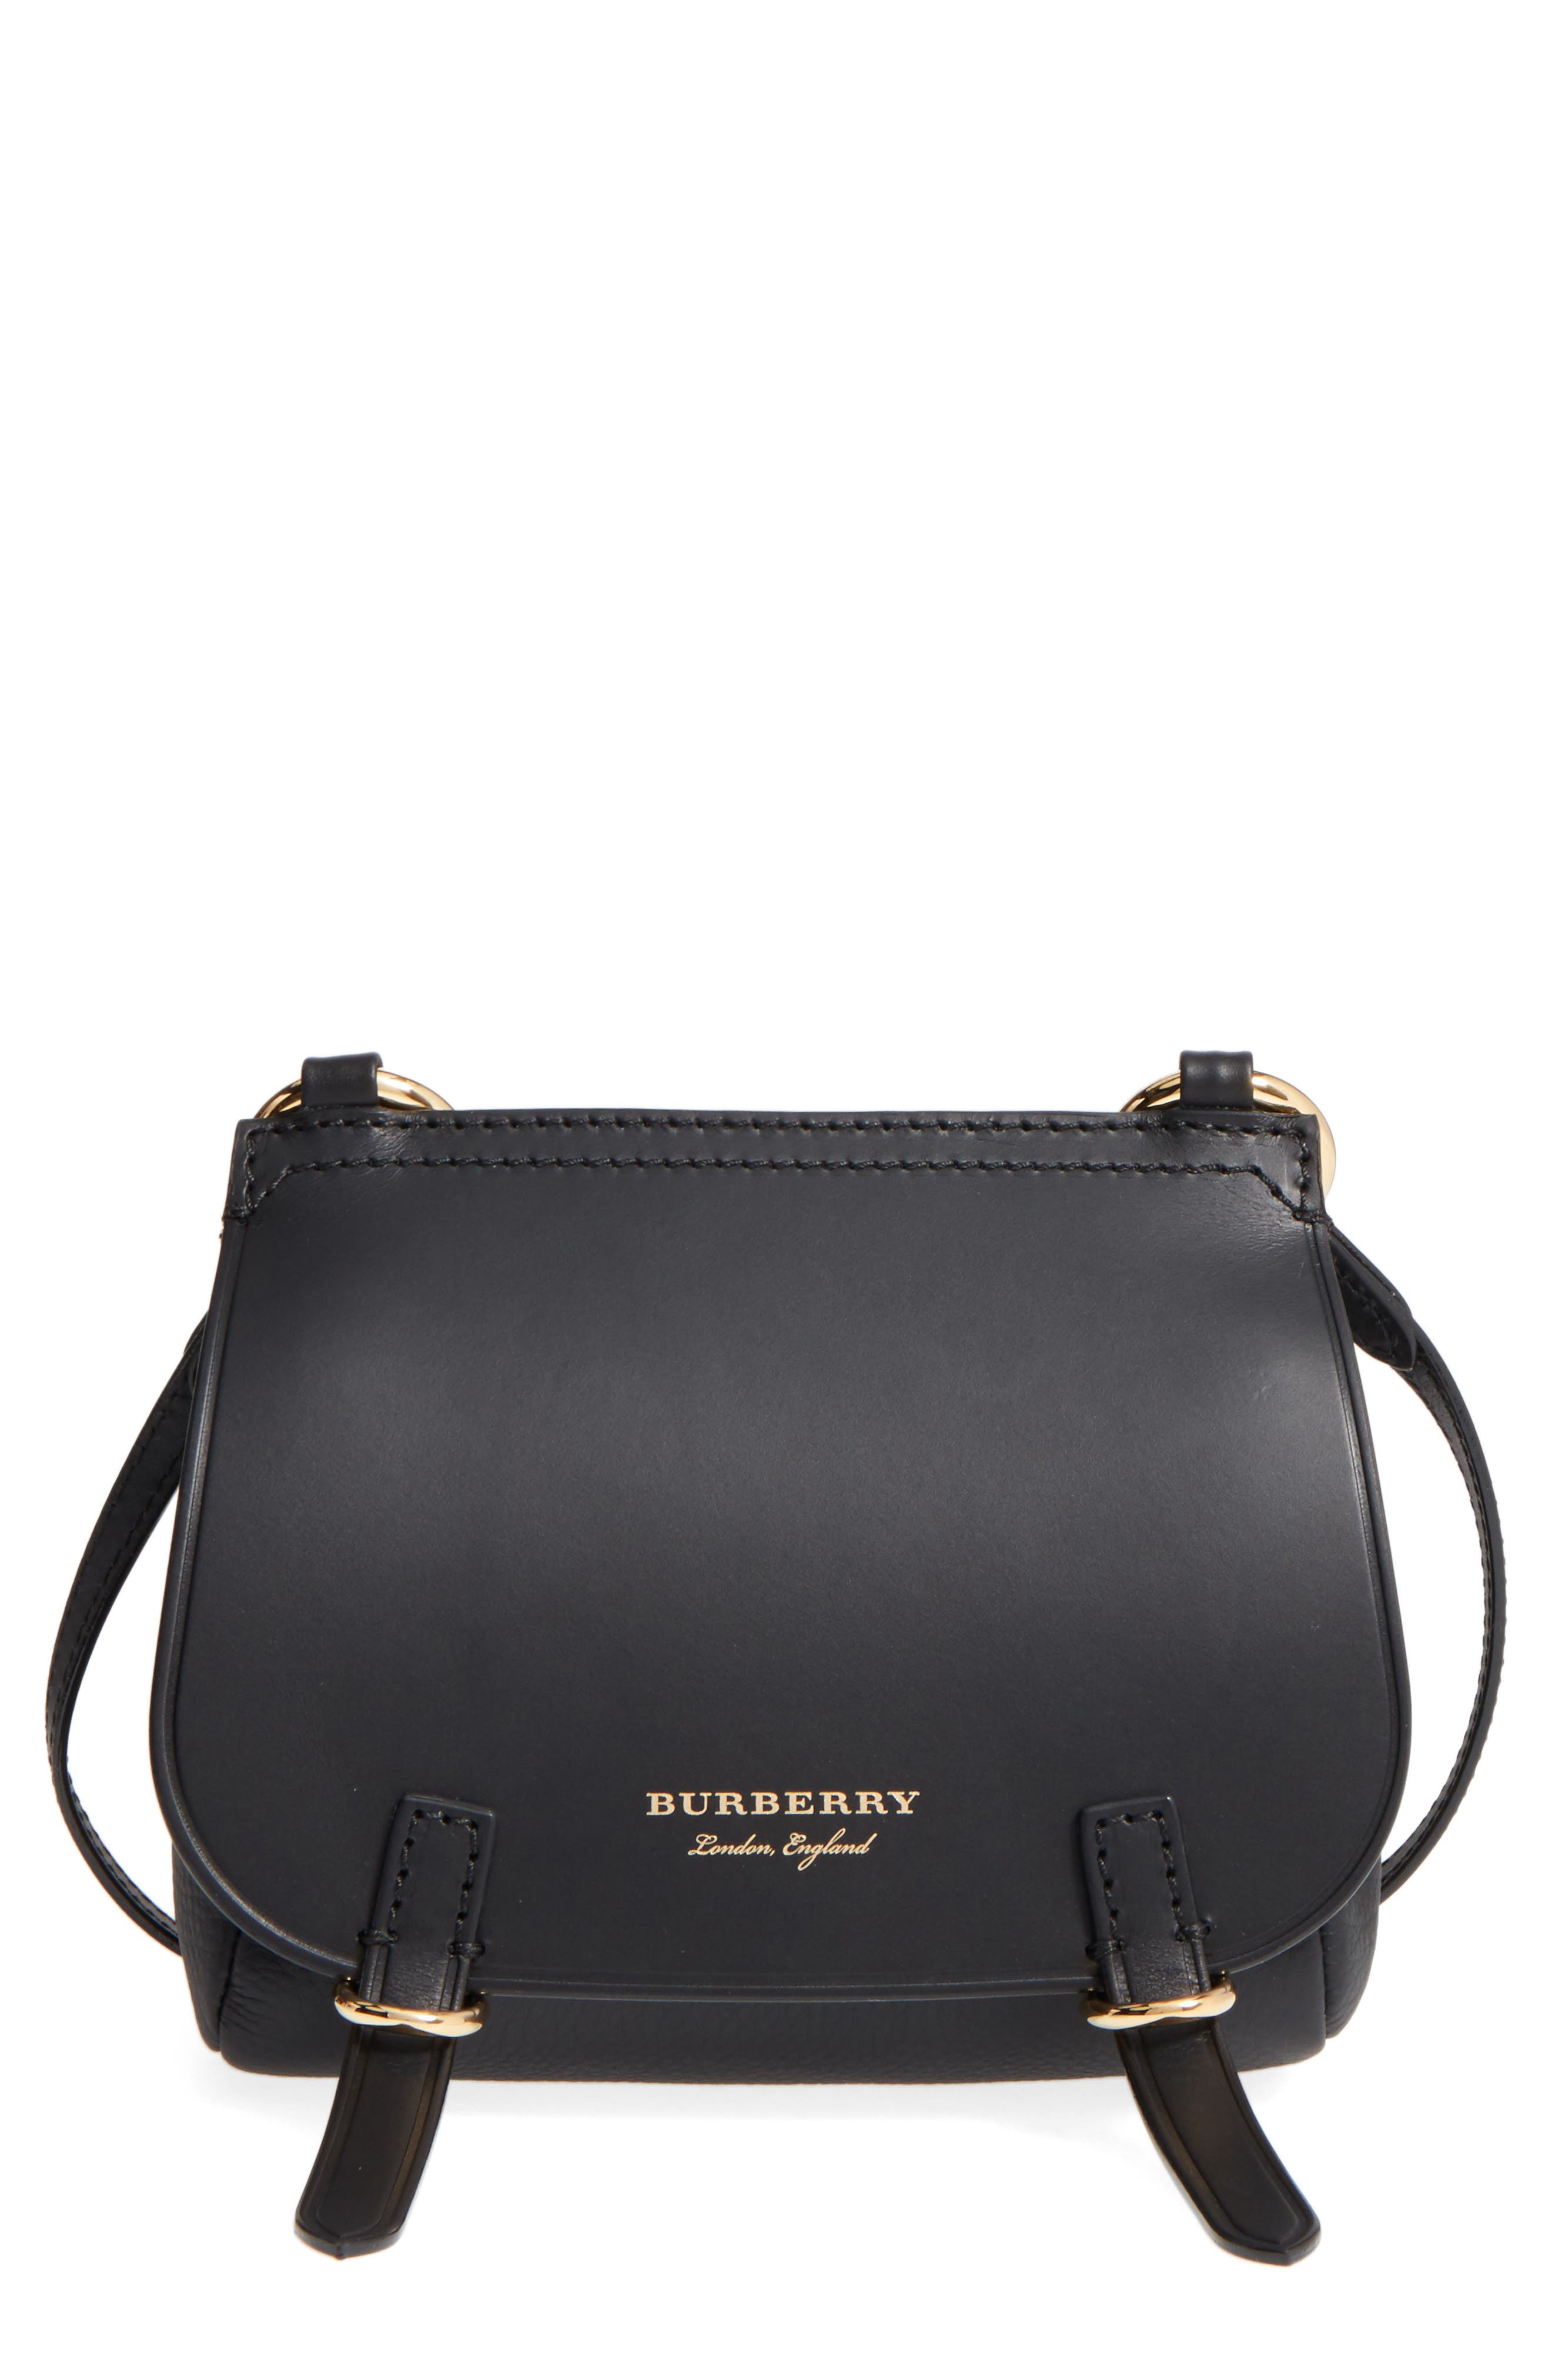 burberry leather shoulder bag